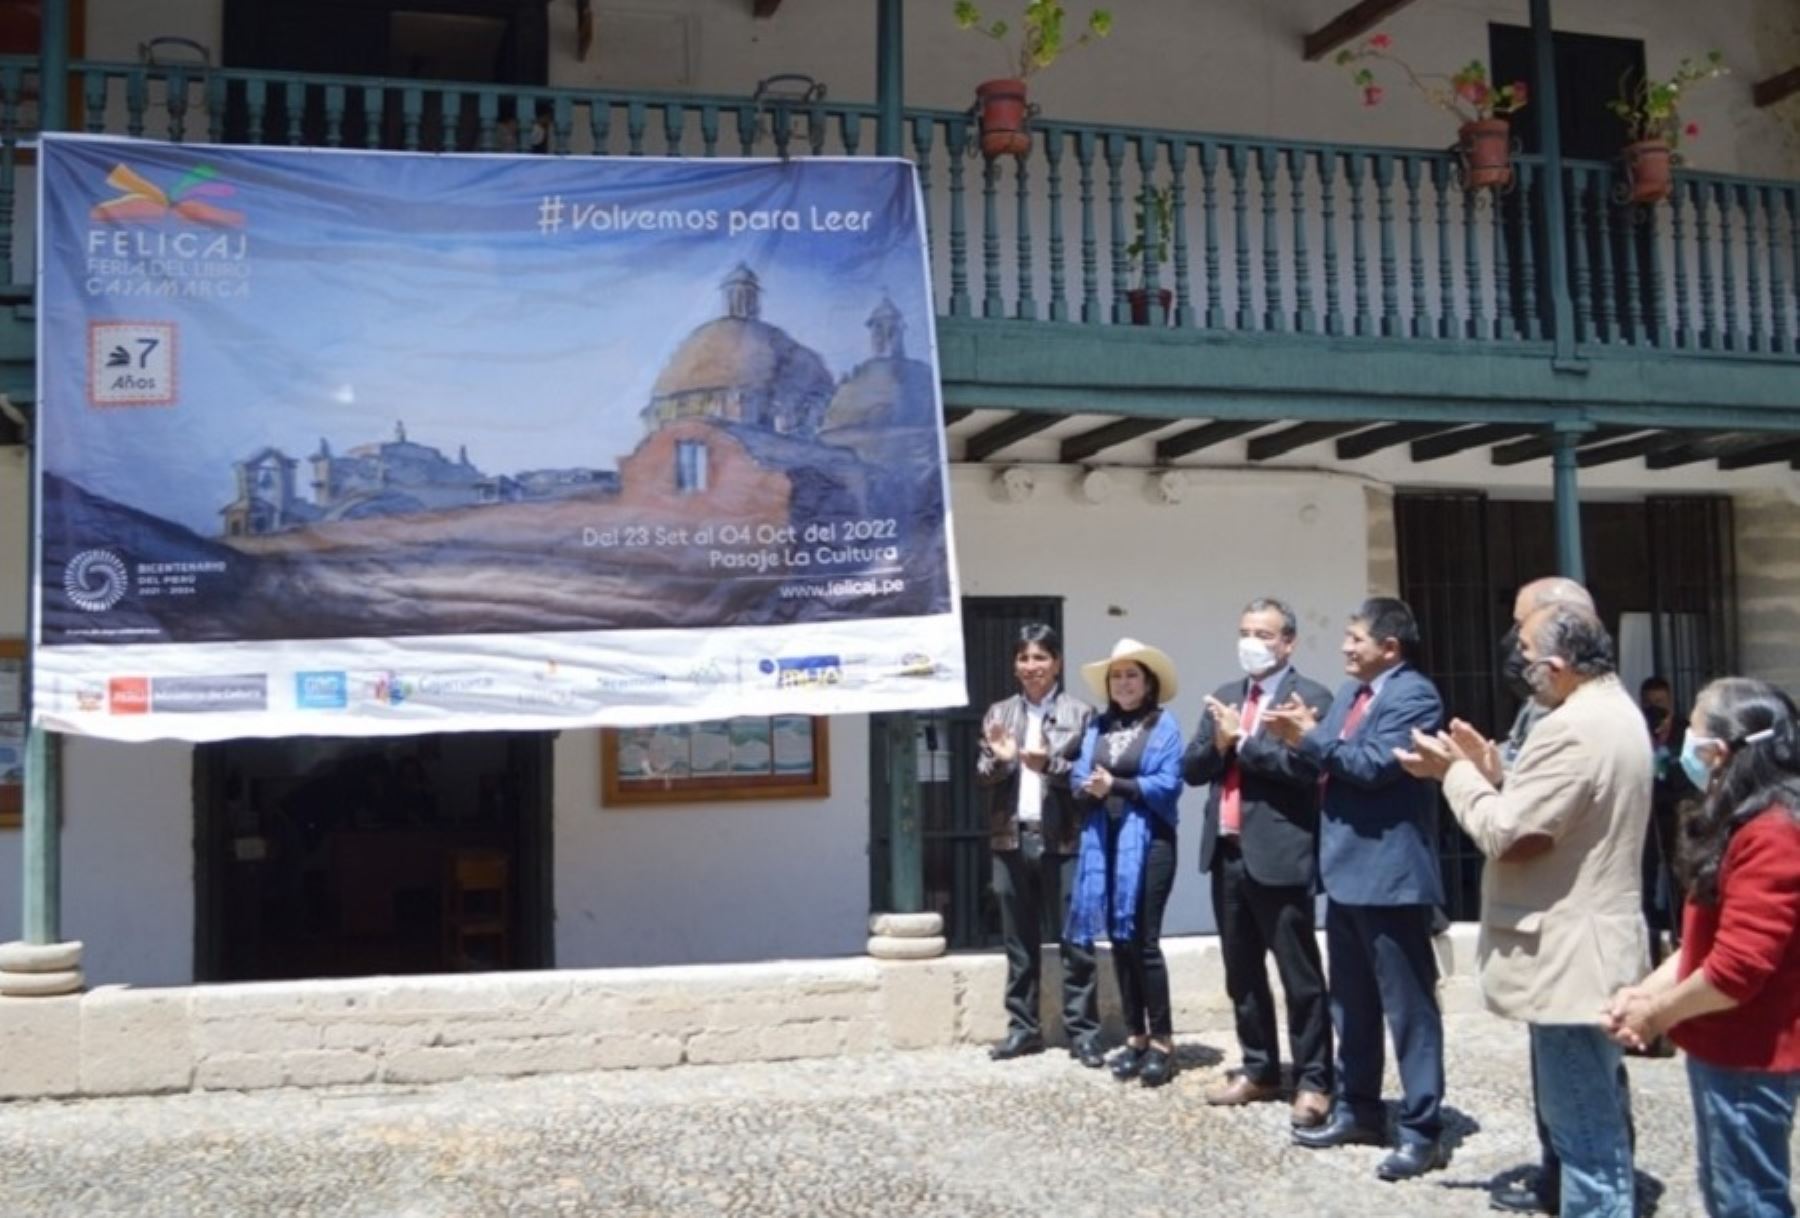 Cajamarca anunció la sétima edición de la Feria del Libro (Felicaj), que tiene como lema “Volvemos para leer” y se desarrollará del 23 de setiembre al 4 de octubre próximo en el pasaje de la Cultura del centro histórico de esta ciudad.